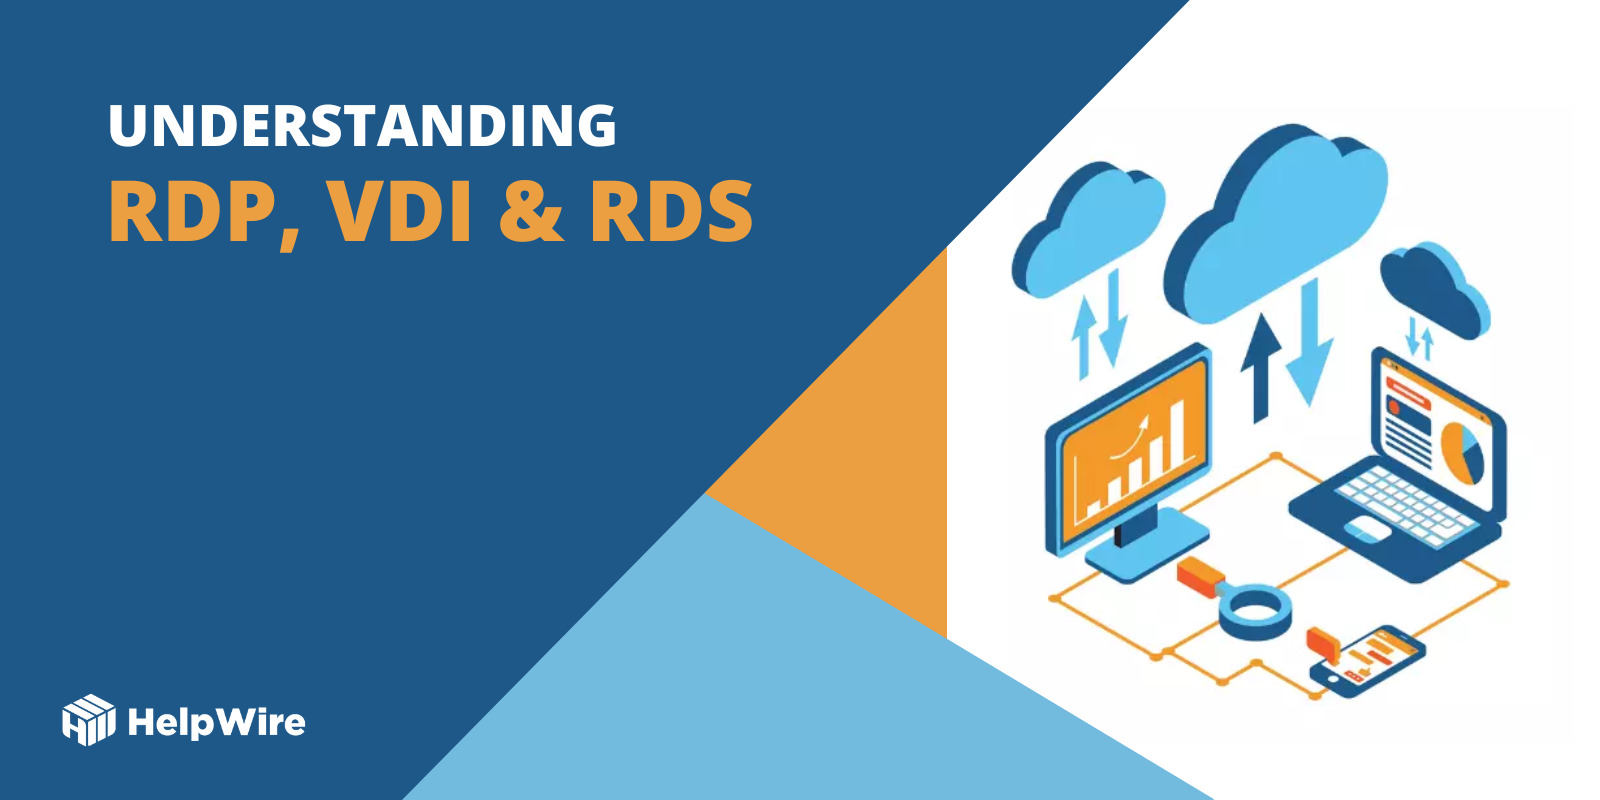 RDP vs VDI vs RDS